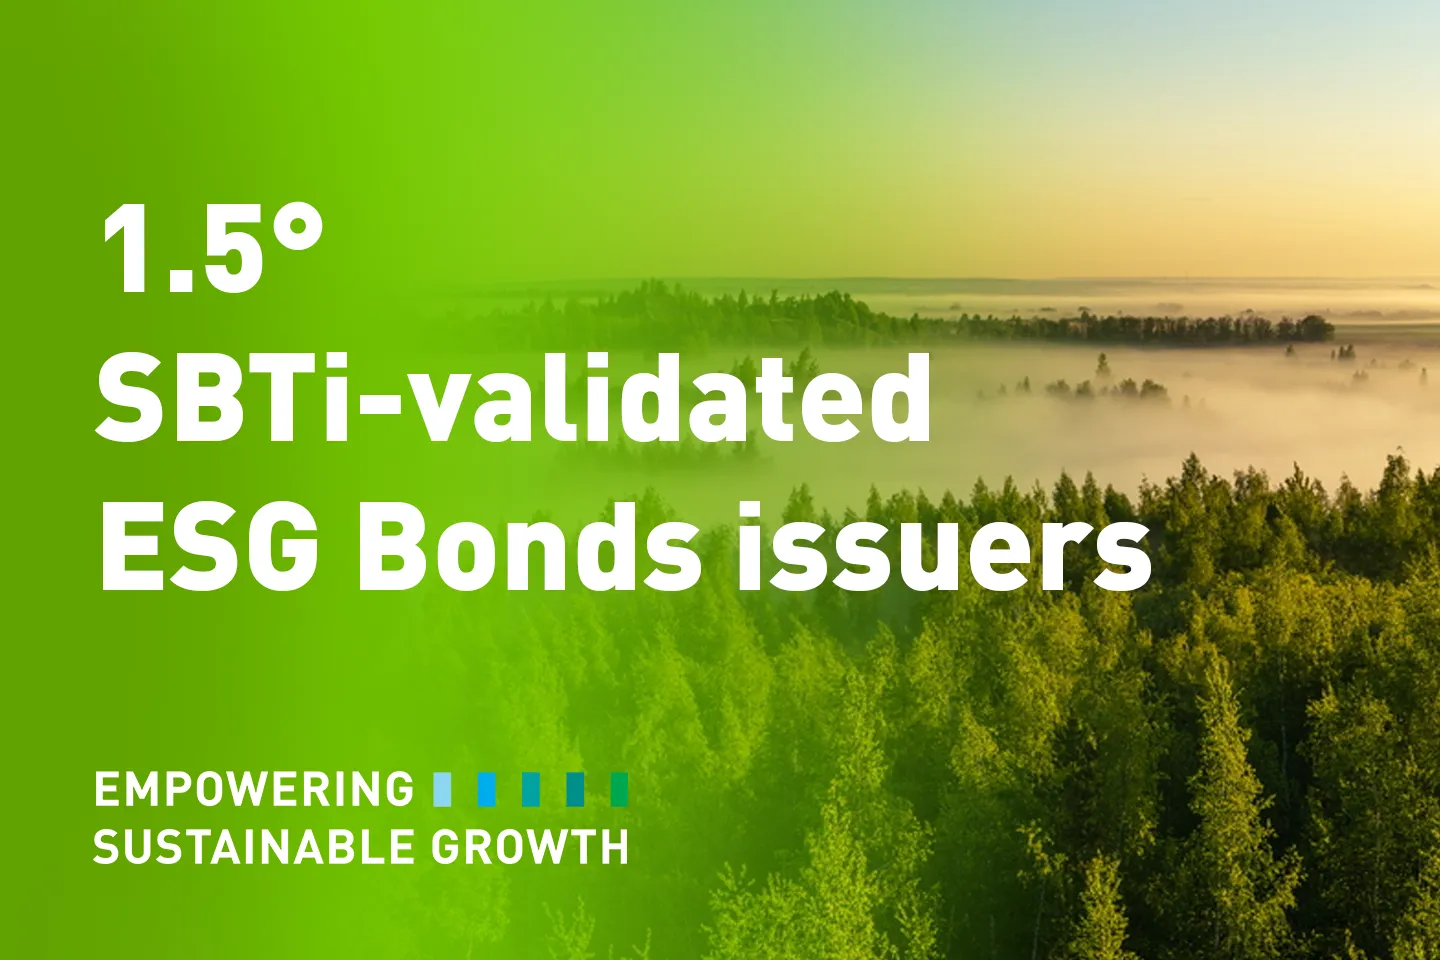 sbti-validated esg bonds issuers